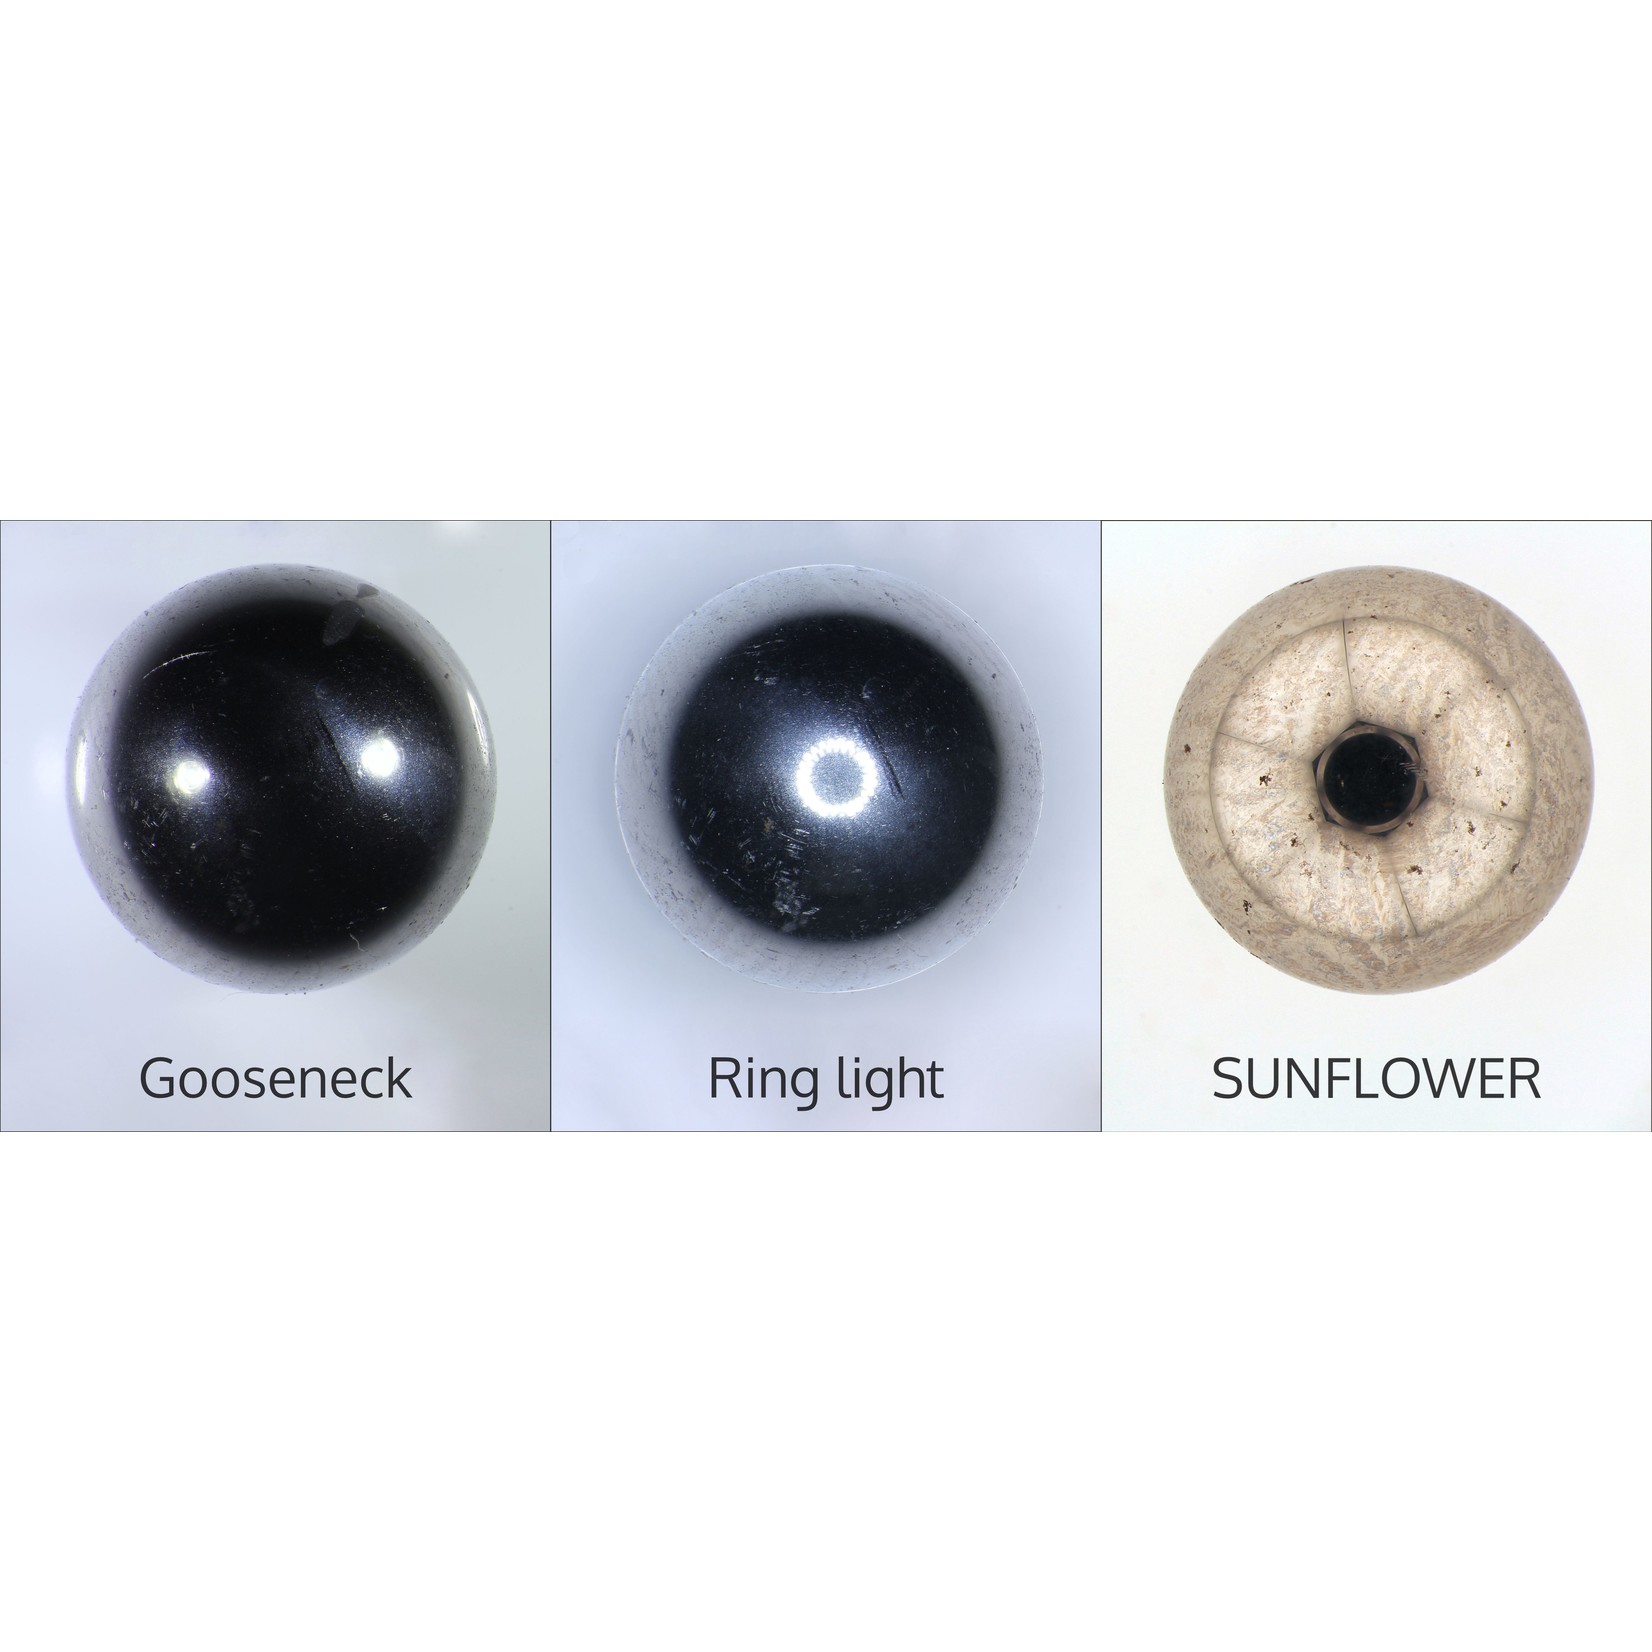 SUNFLOWER - podświetlenie LED stereomikroskopu